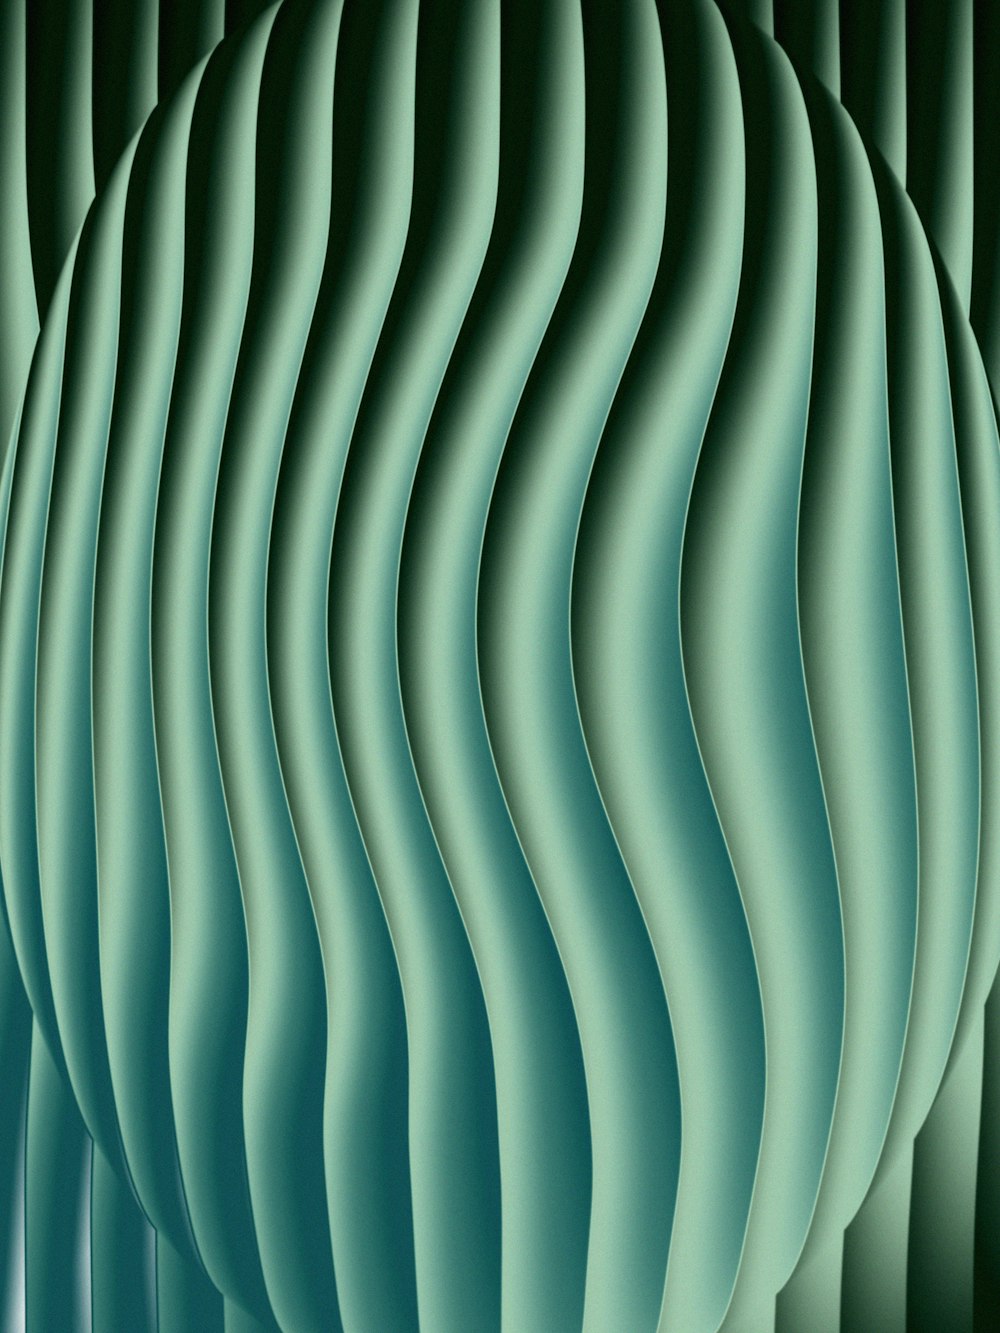 Un fond abstrait vert avec des lignes ondulées